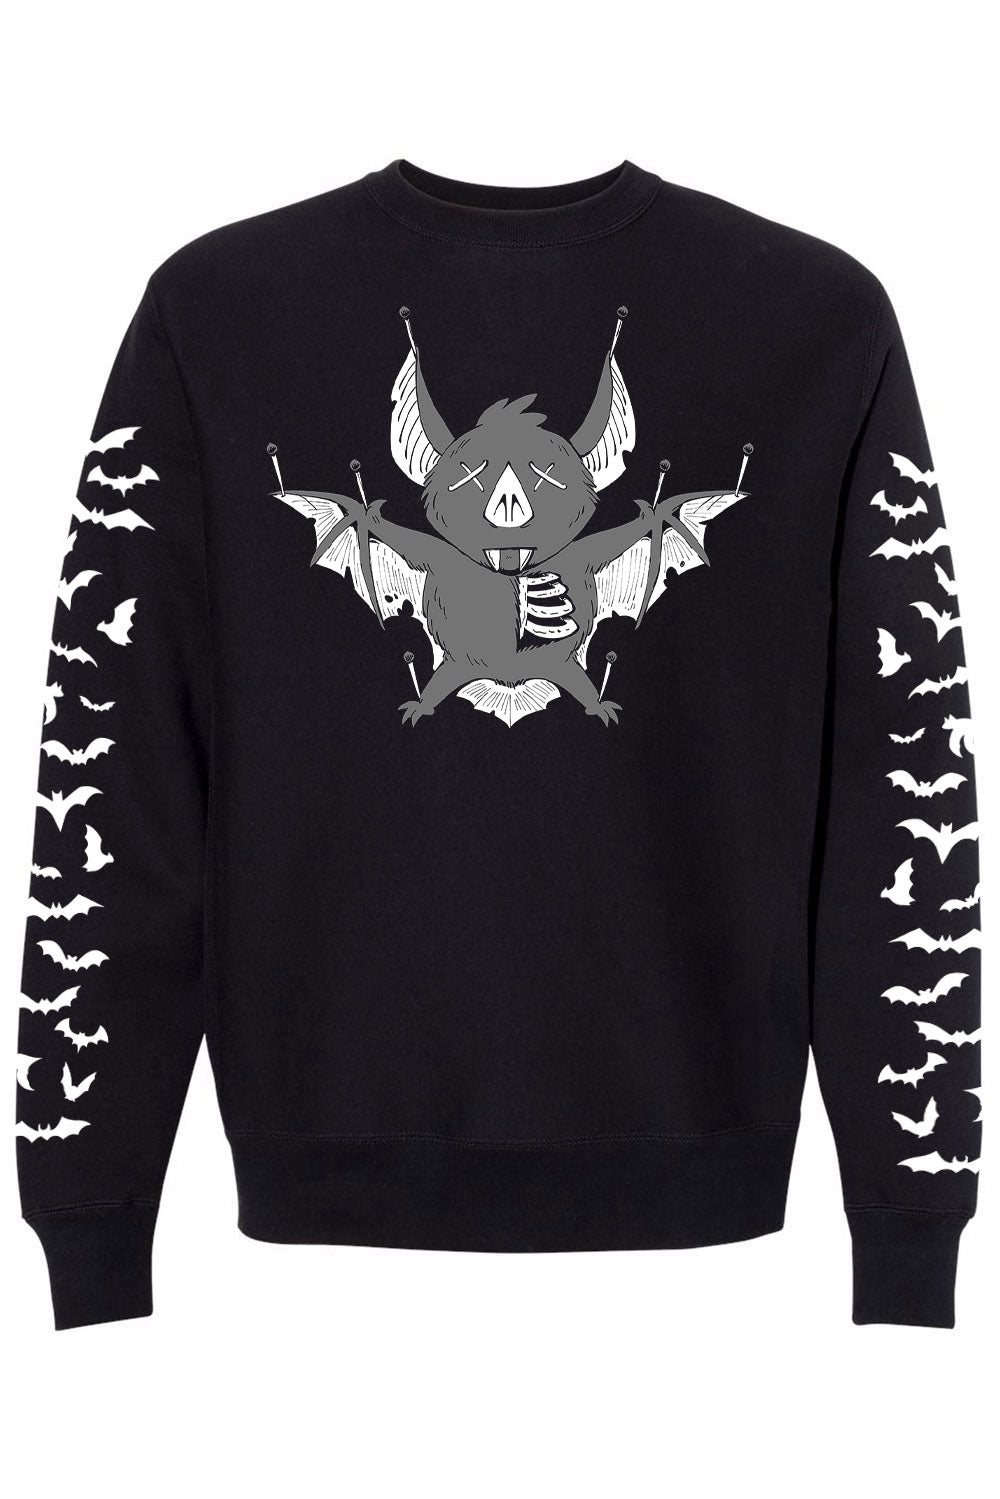 Taxidermy Bat Sweatshirt [Bat Sleeves]